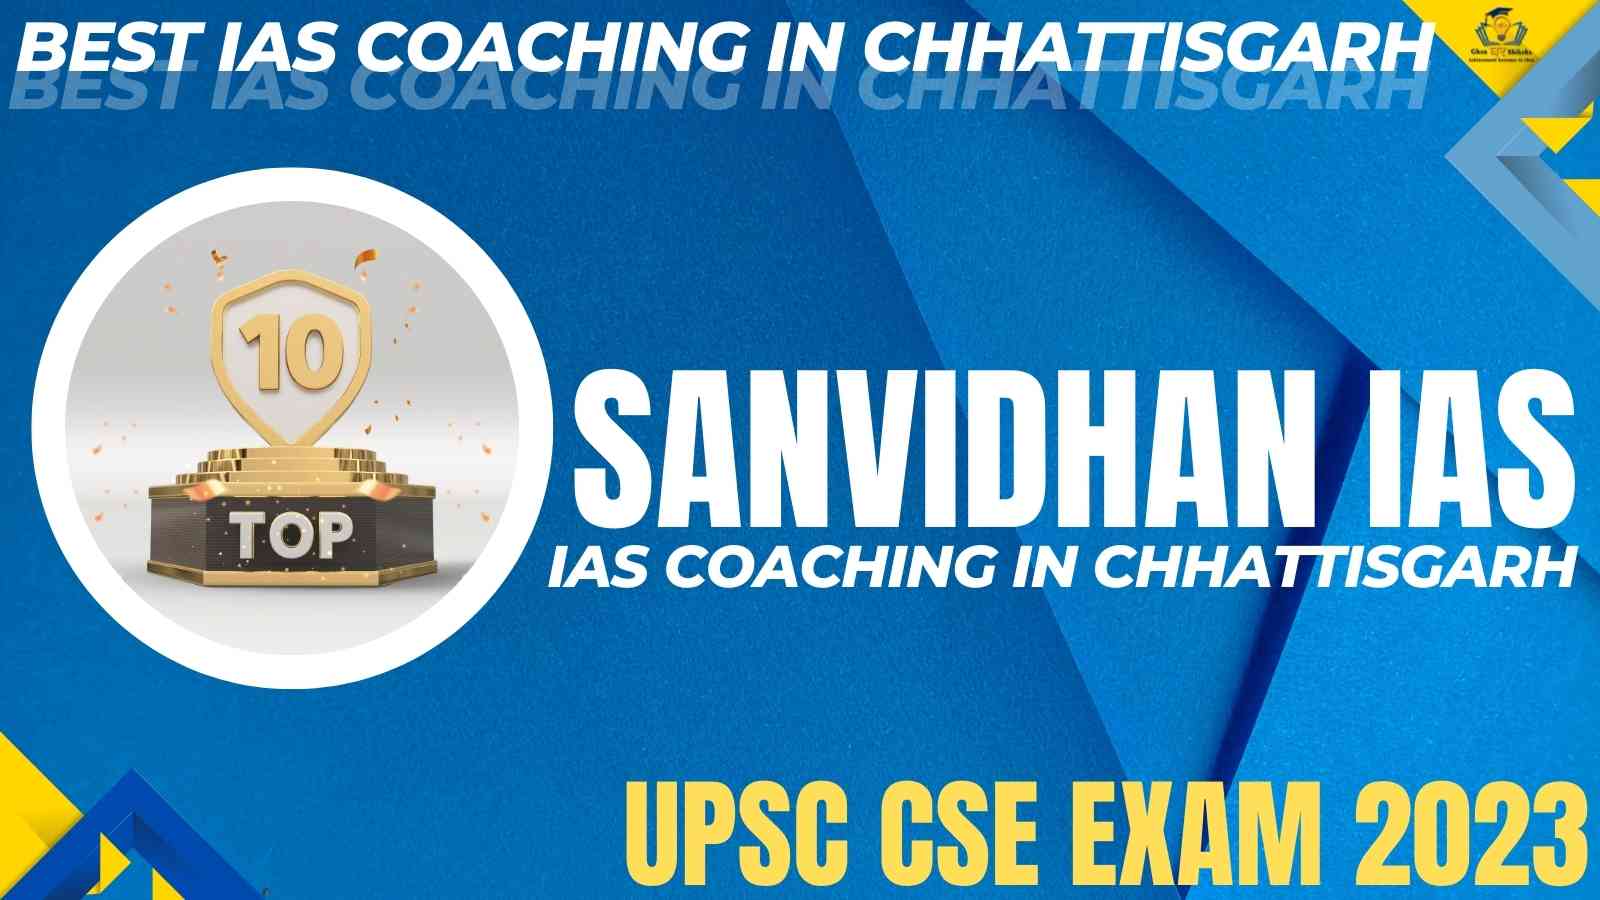 Best UPSC Coaching of Chhattisgarh